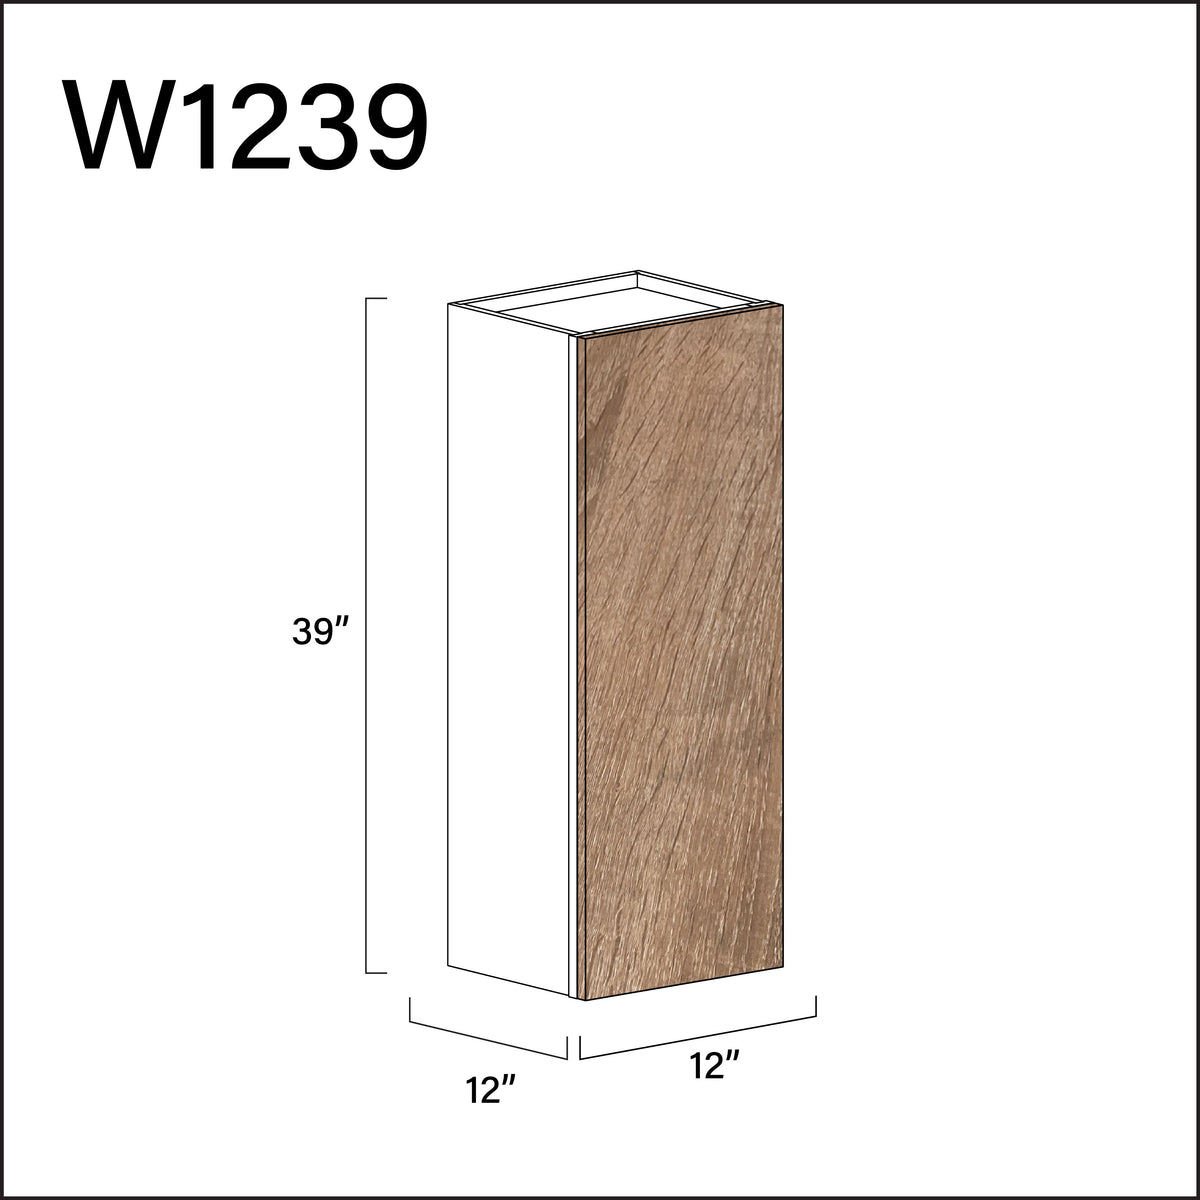 Textured Oak Frameless Single Door Wall Cabinet - 12" W x 39" H x 12" D